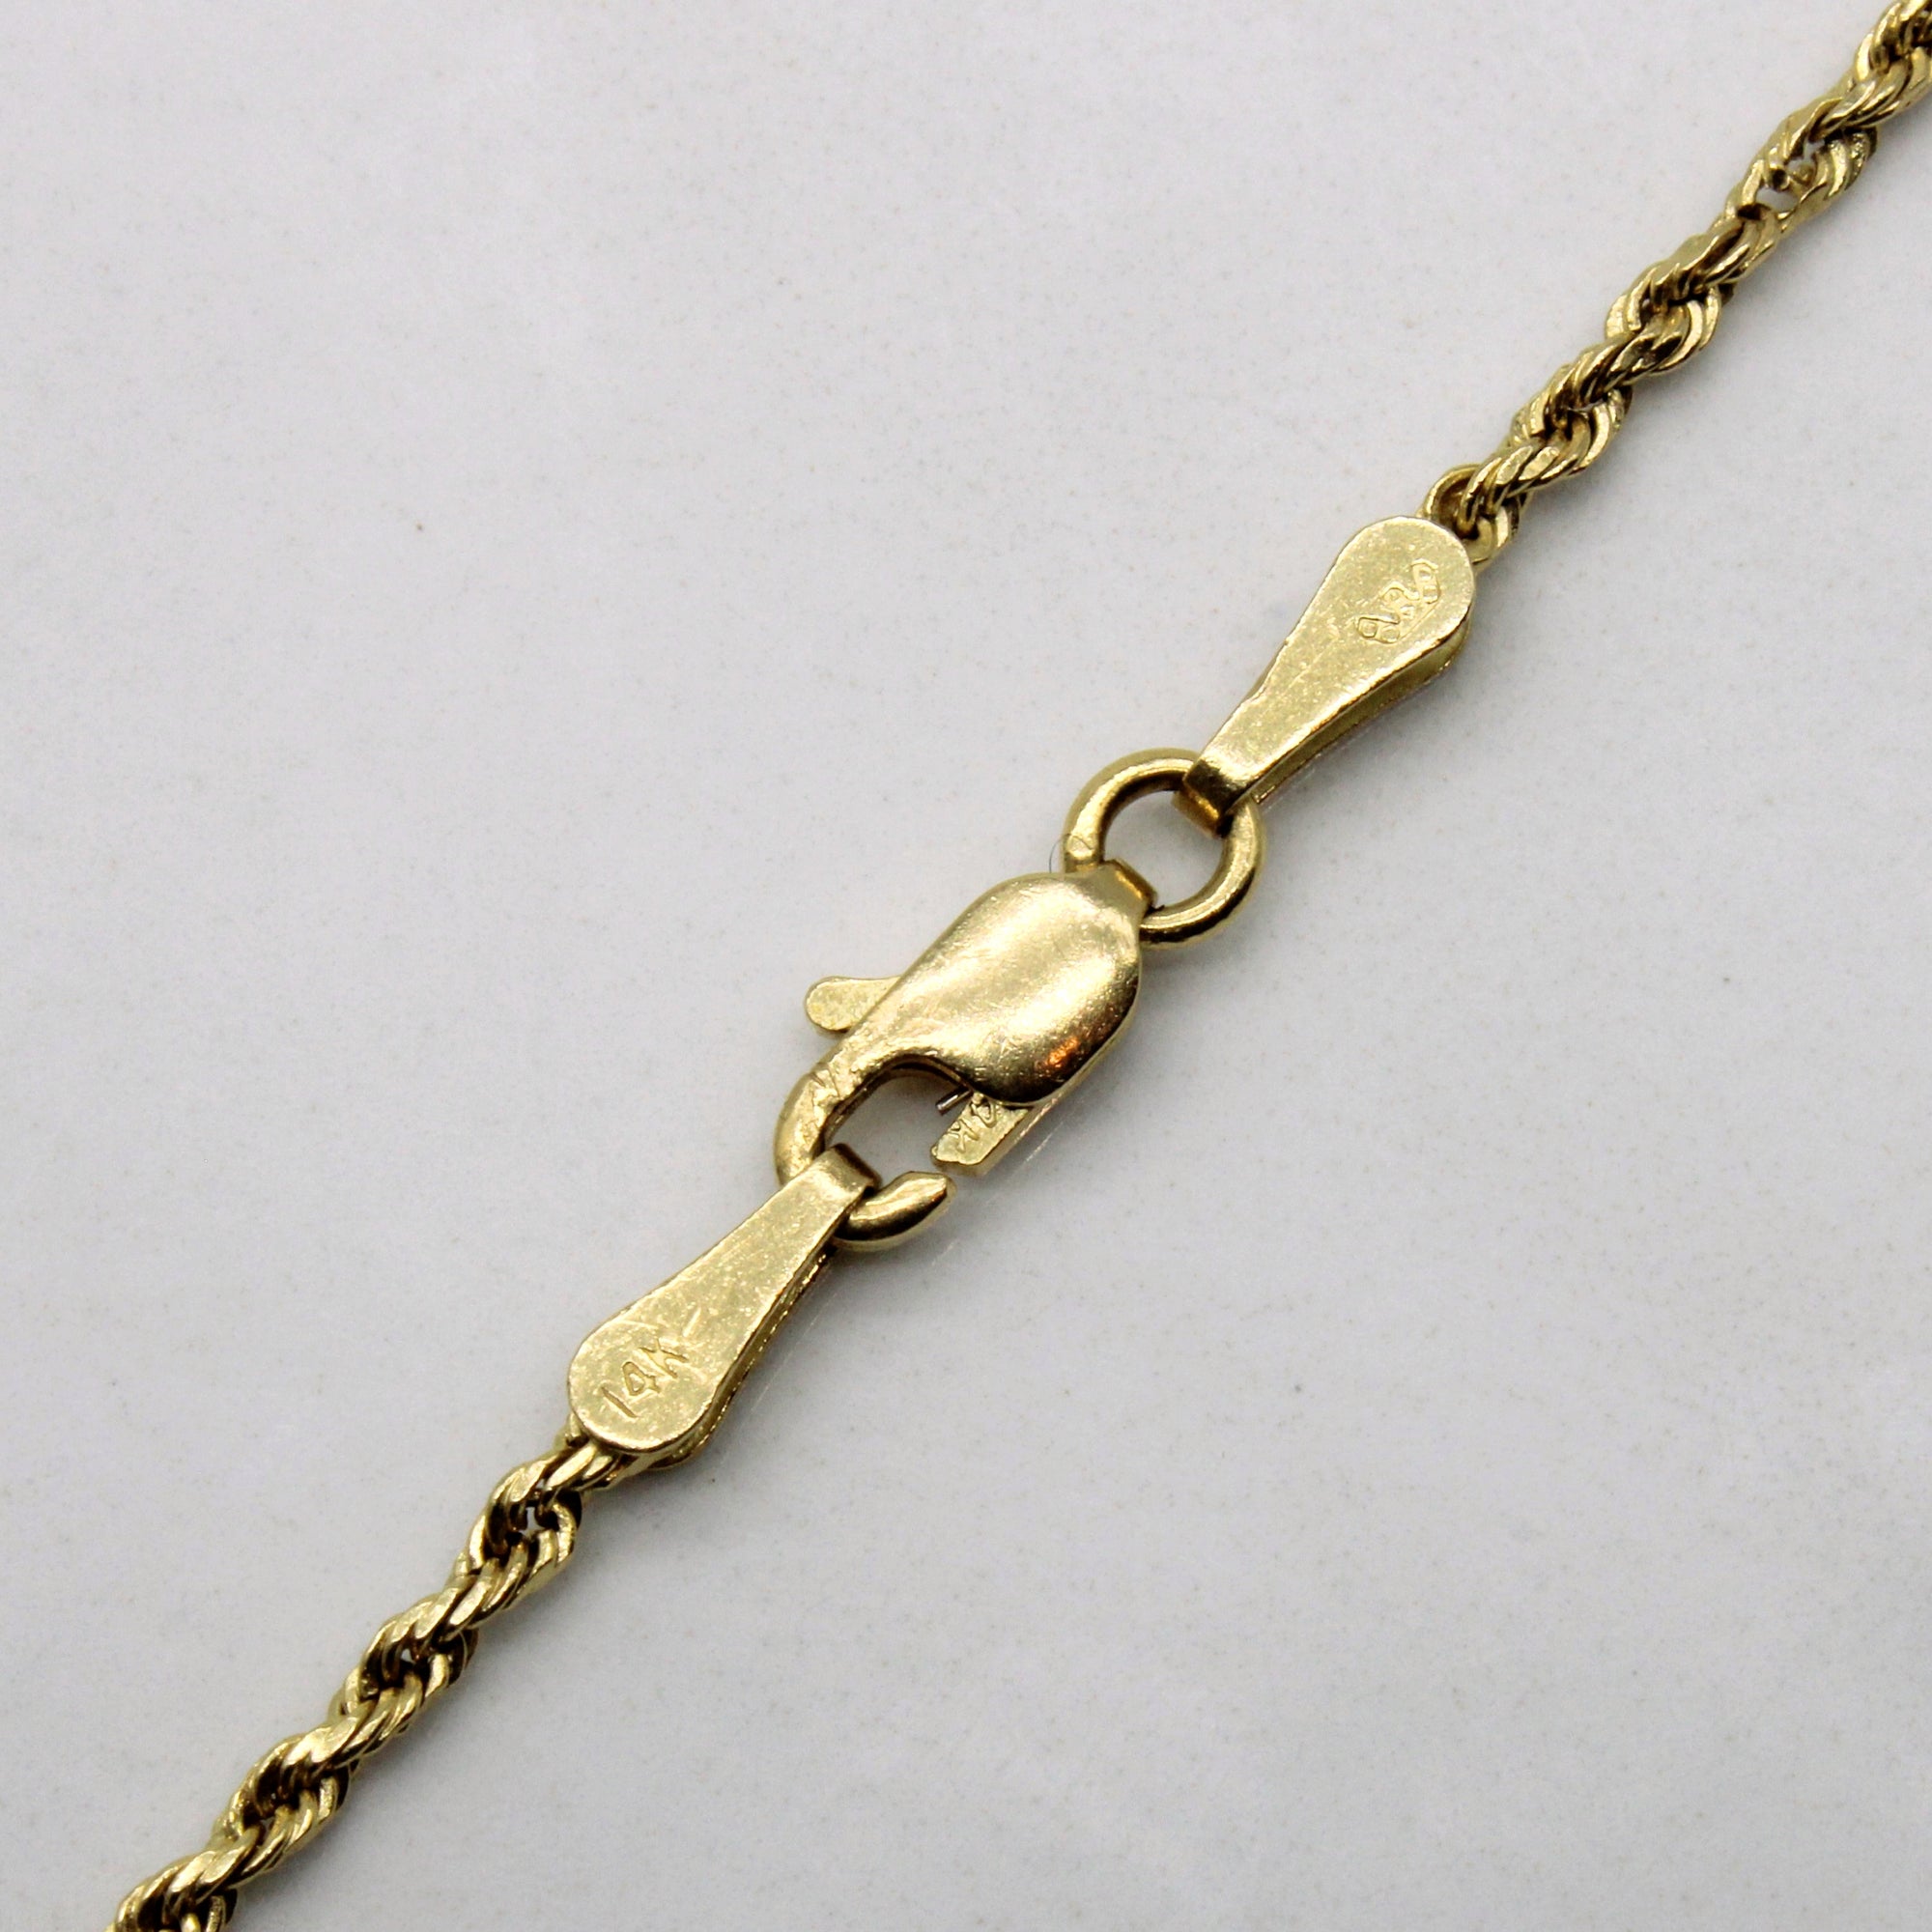 14k Yellow Gold Rope Chain | 22